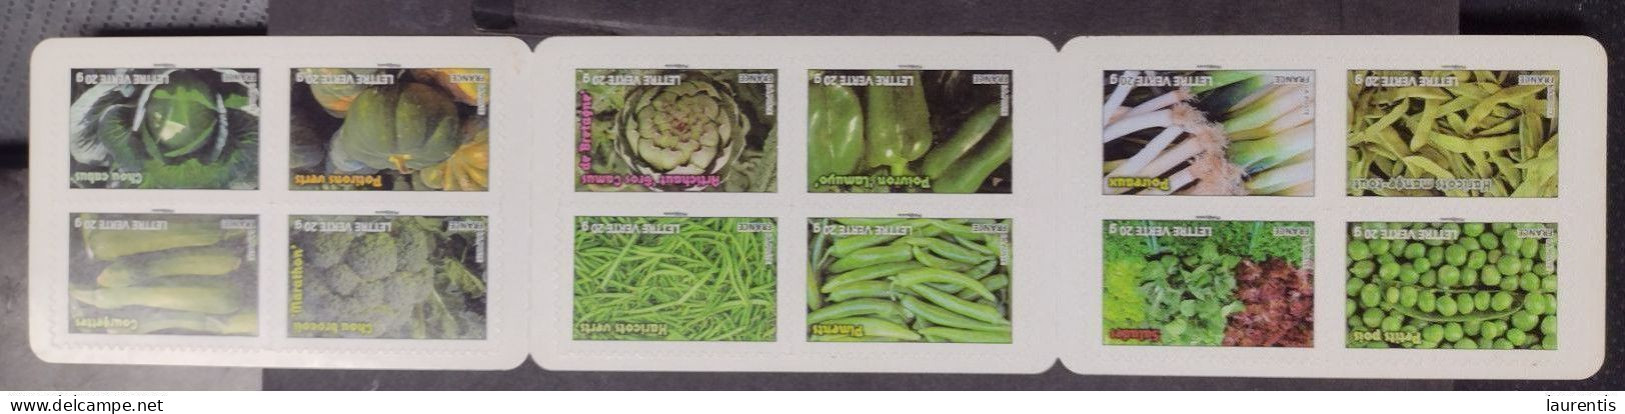 D7028  Vegetables - Foods - France MNH - Face Value 13€92 - 1€16 Each - 12,75 - Legumbres